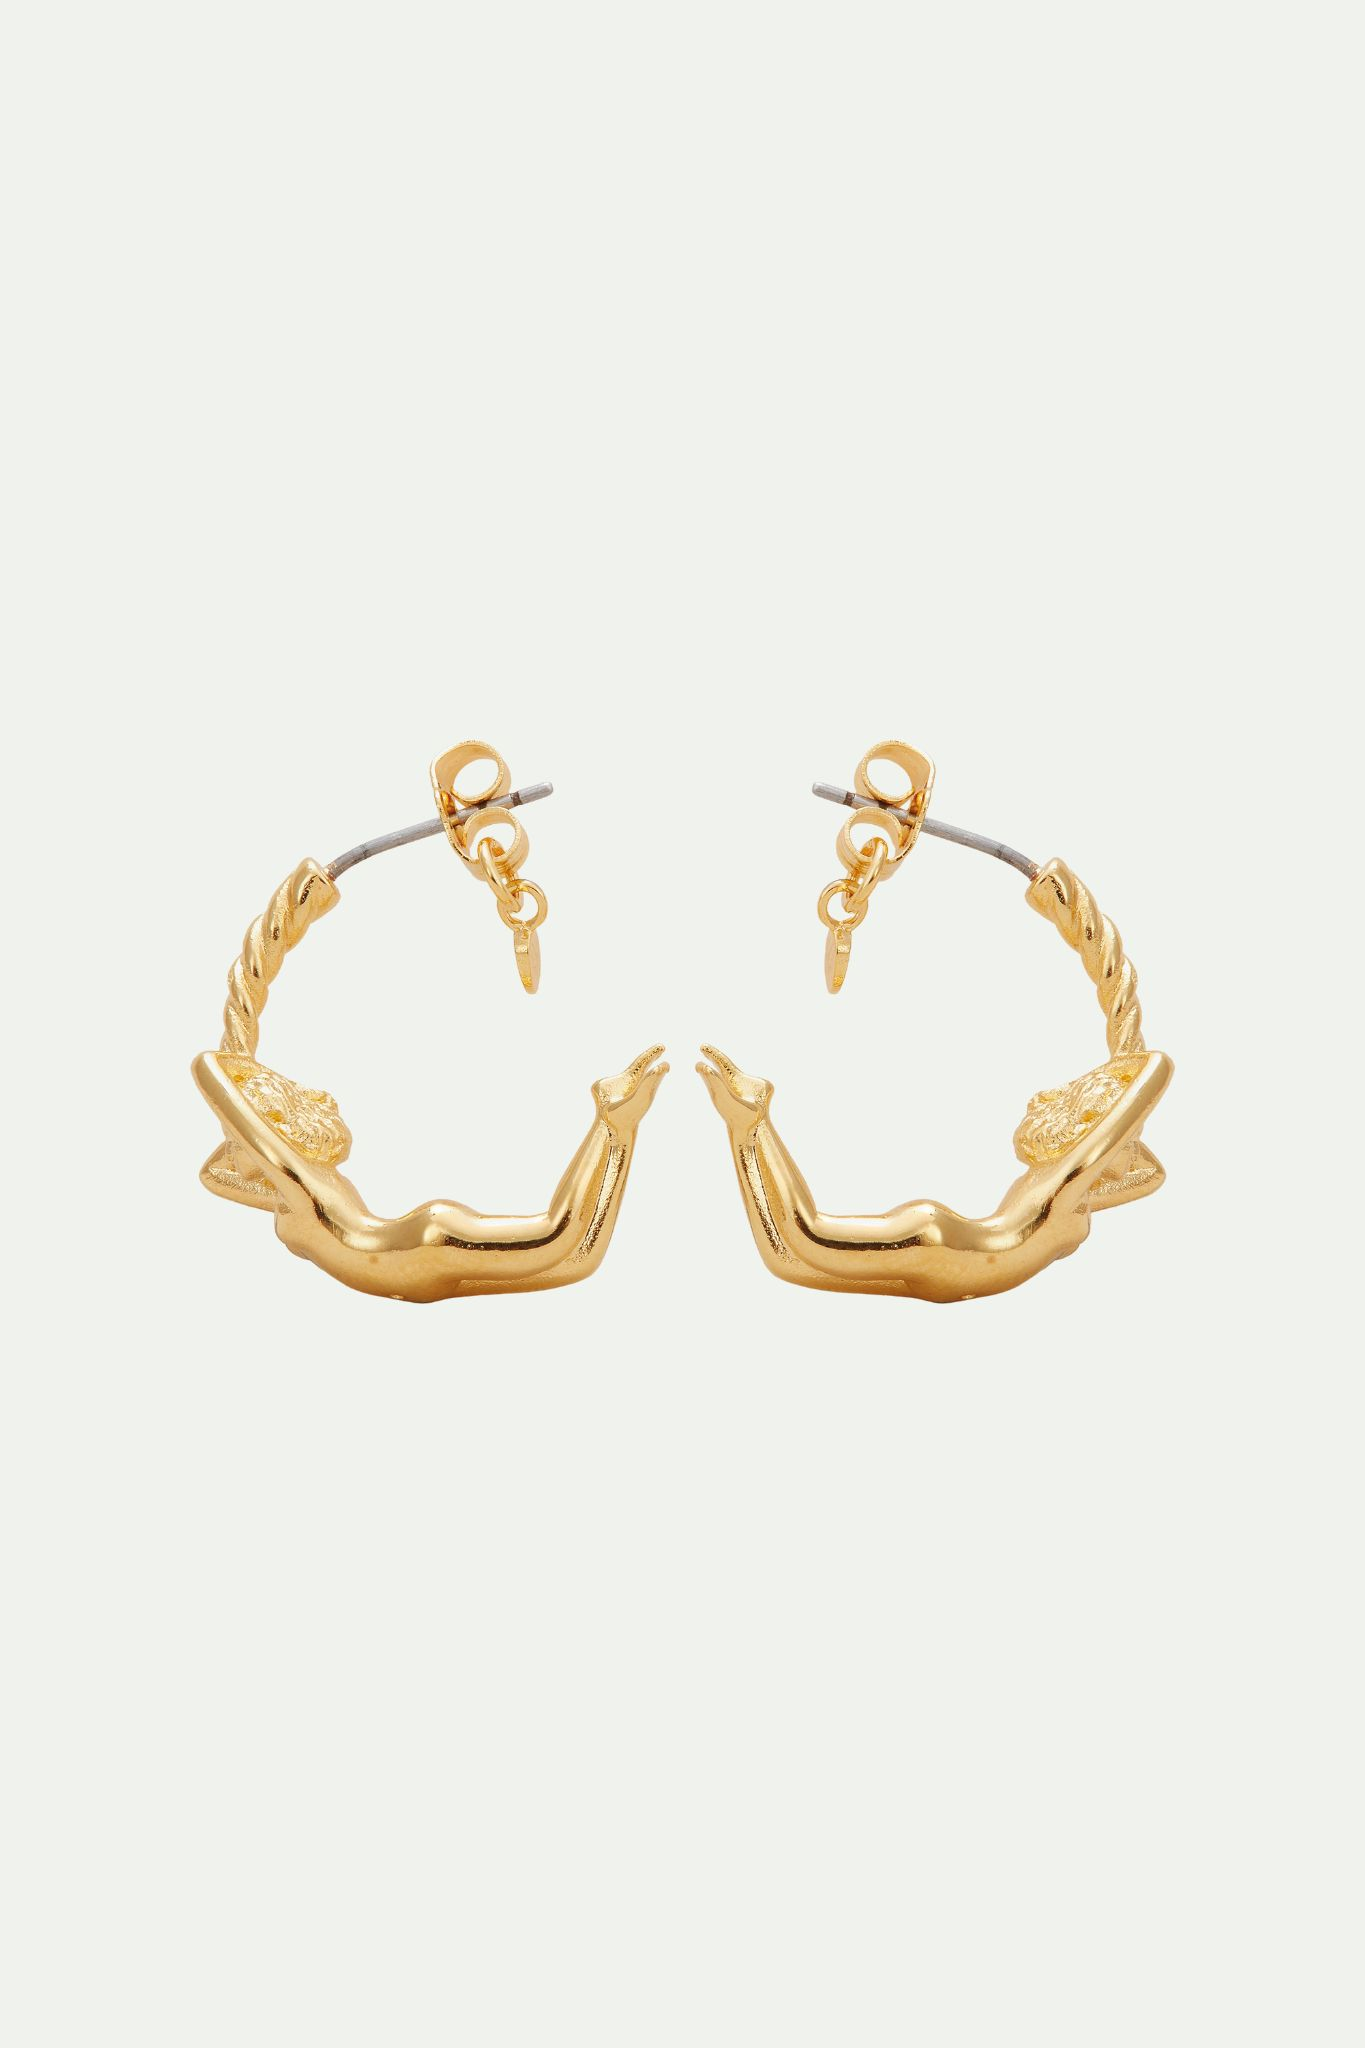 Virgo zodiac sign hoops earrings